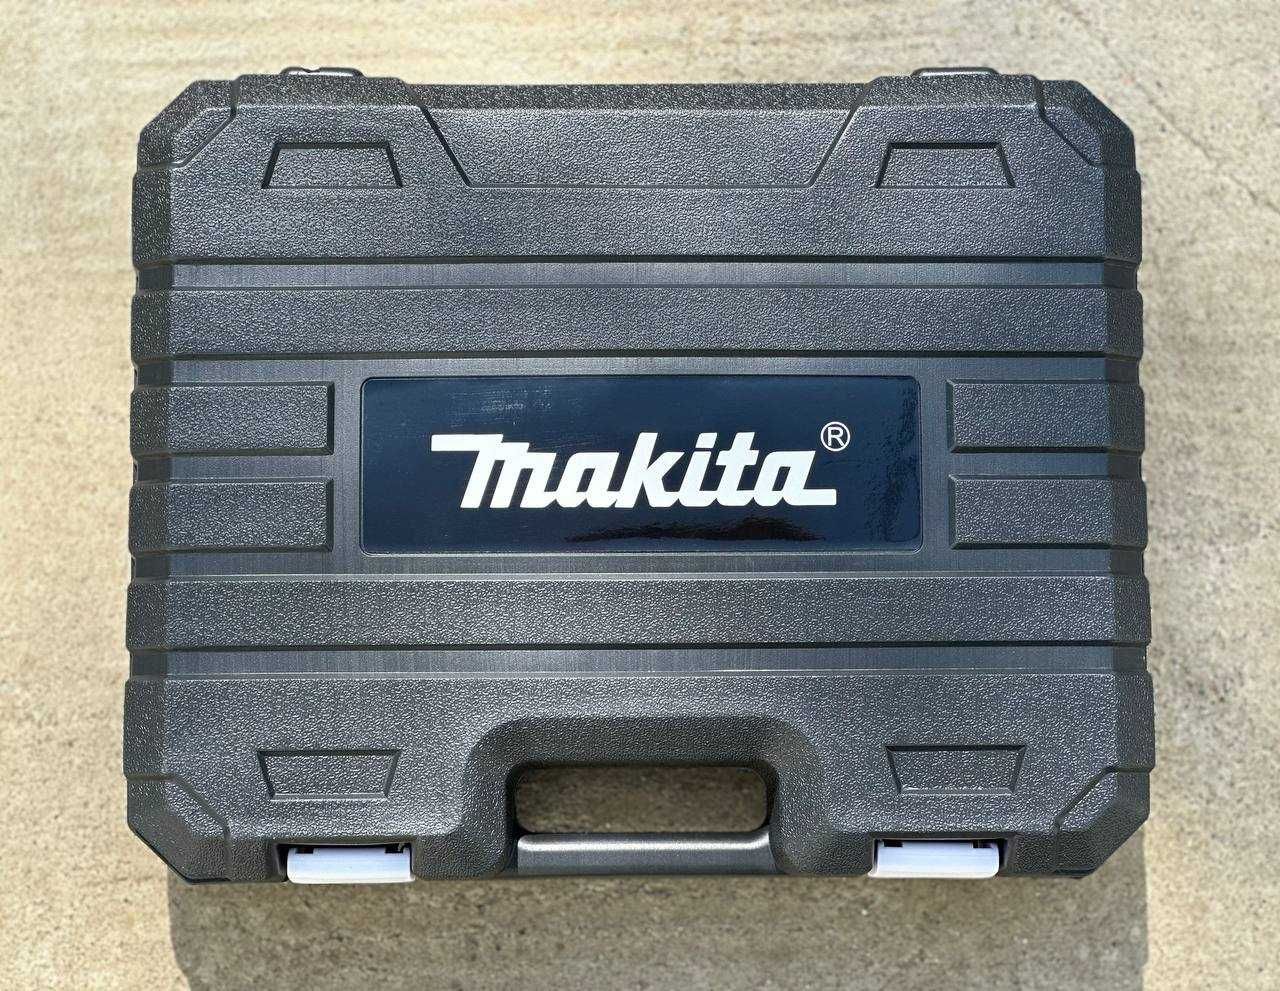 2АКБ Аккумуляторний набор Makita 2в1 Пилка+Болгарка в кейсе 198V/6A